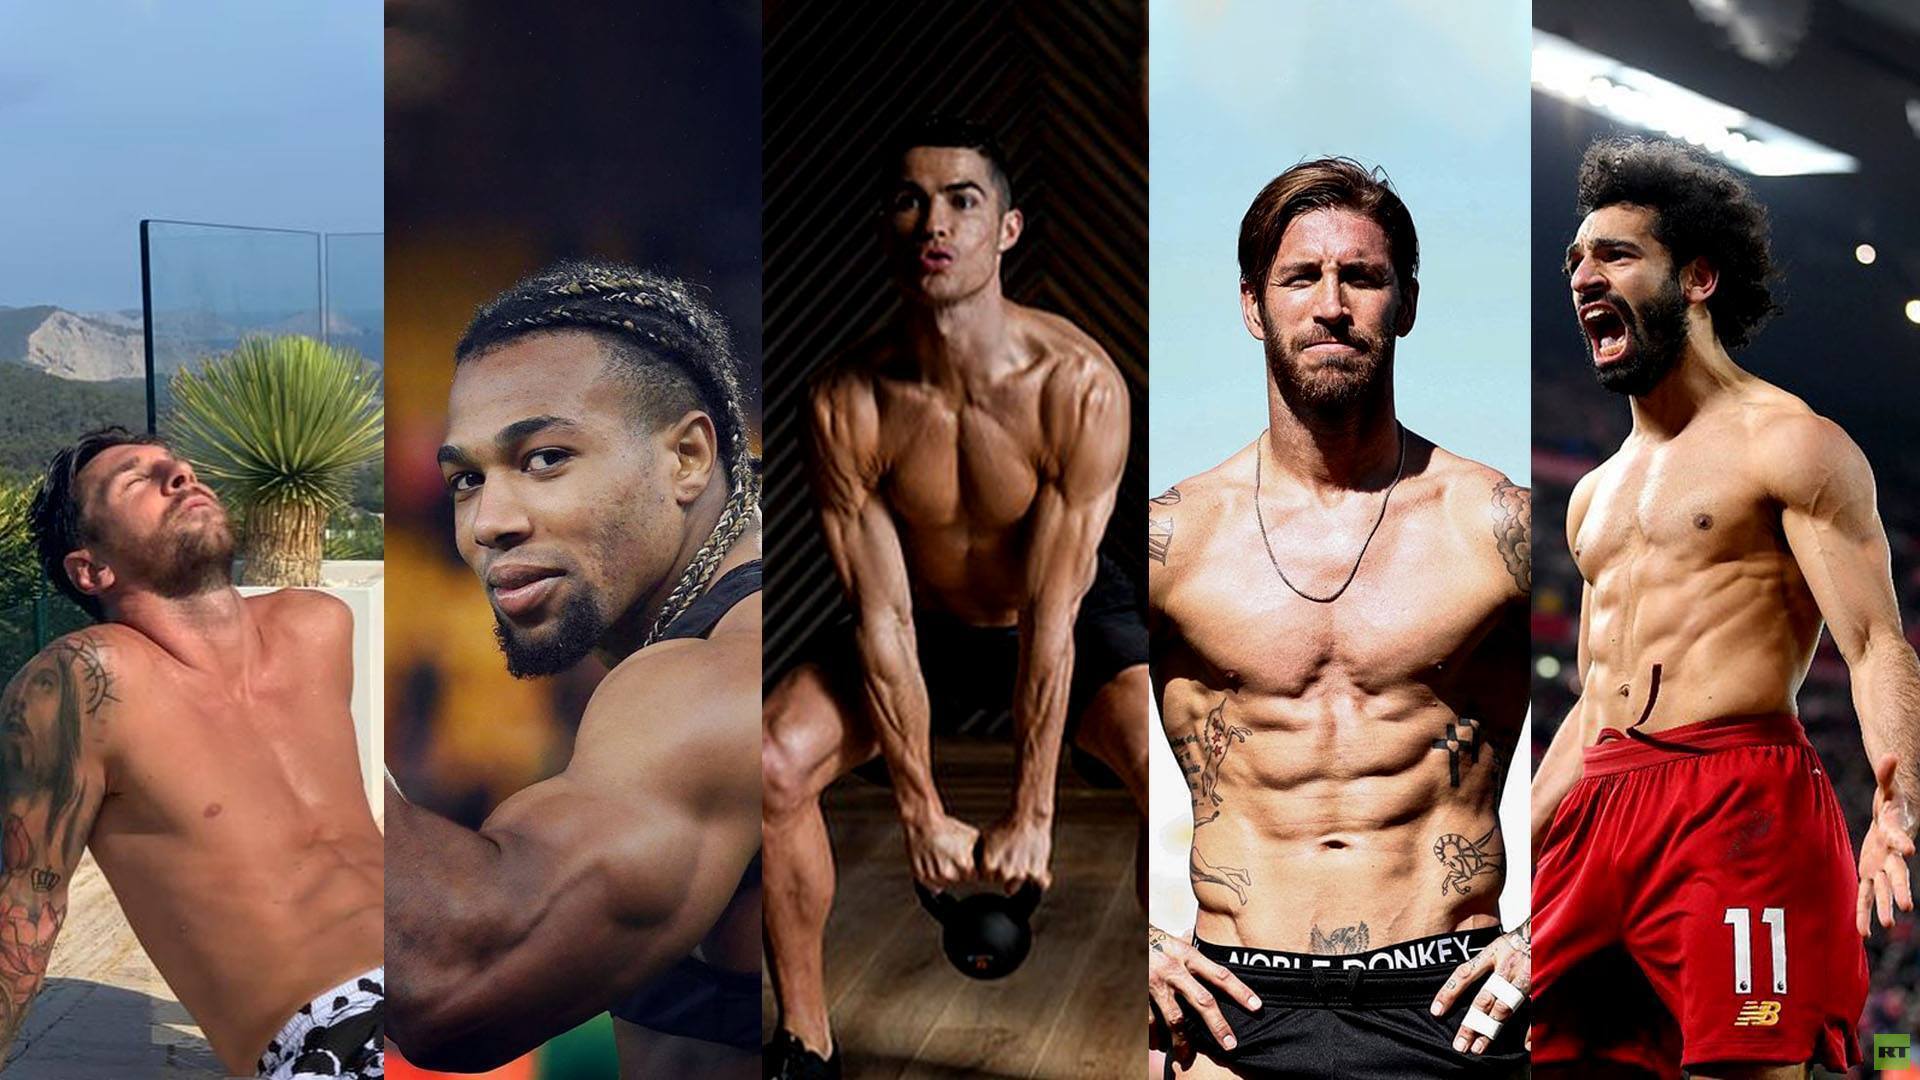 ما سر إقبال بعض لاعبي كرة القدم على استعراض عضلاتهم؟